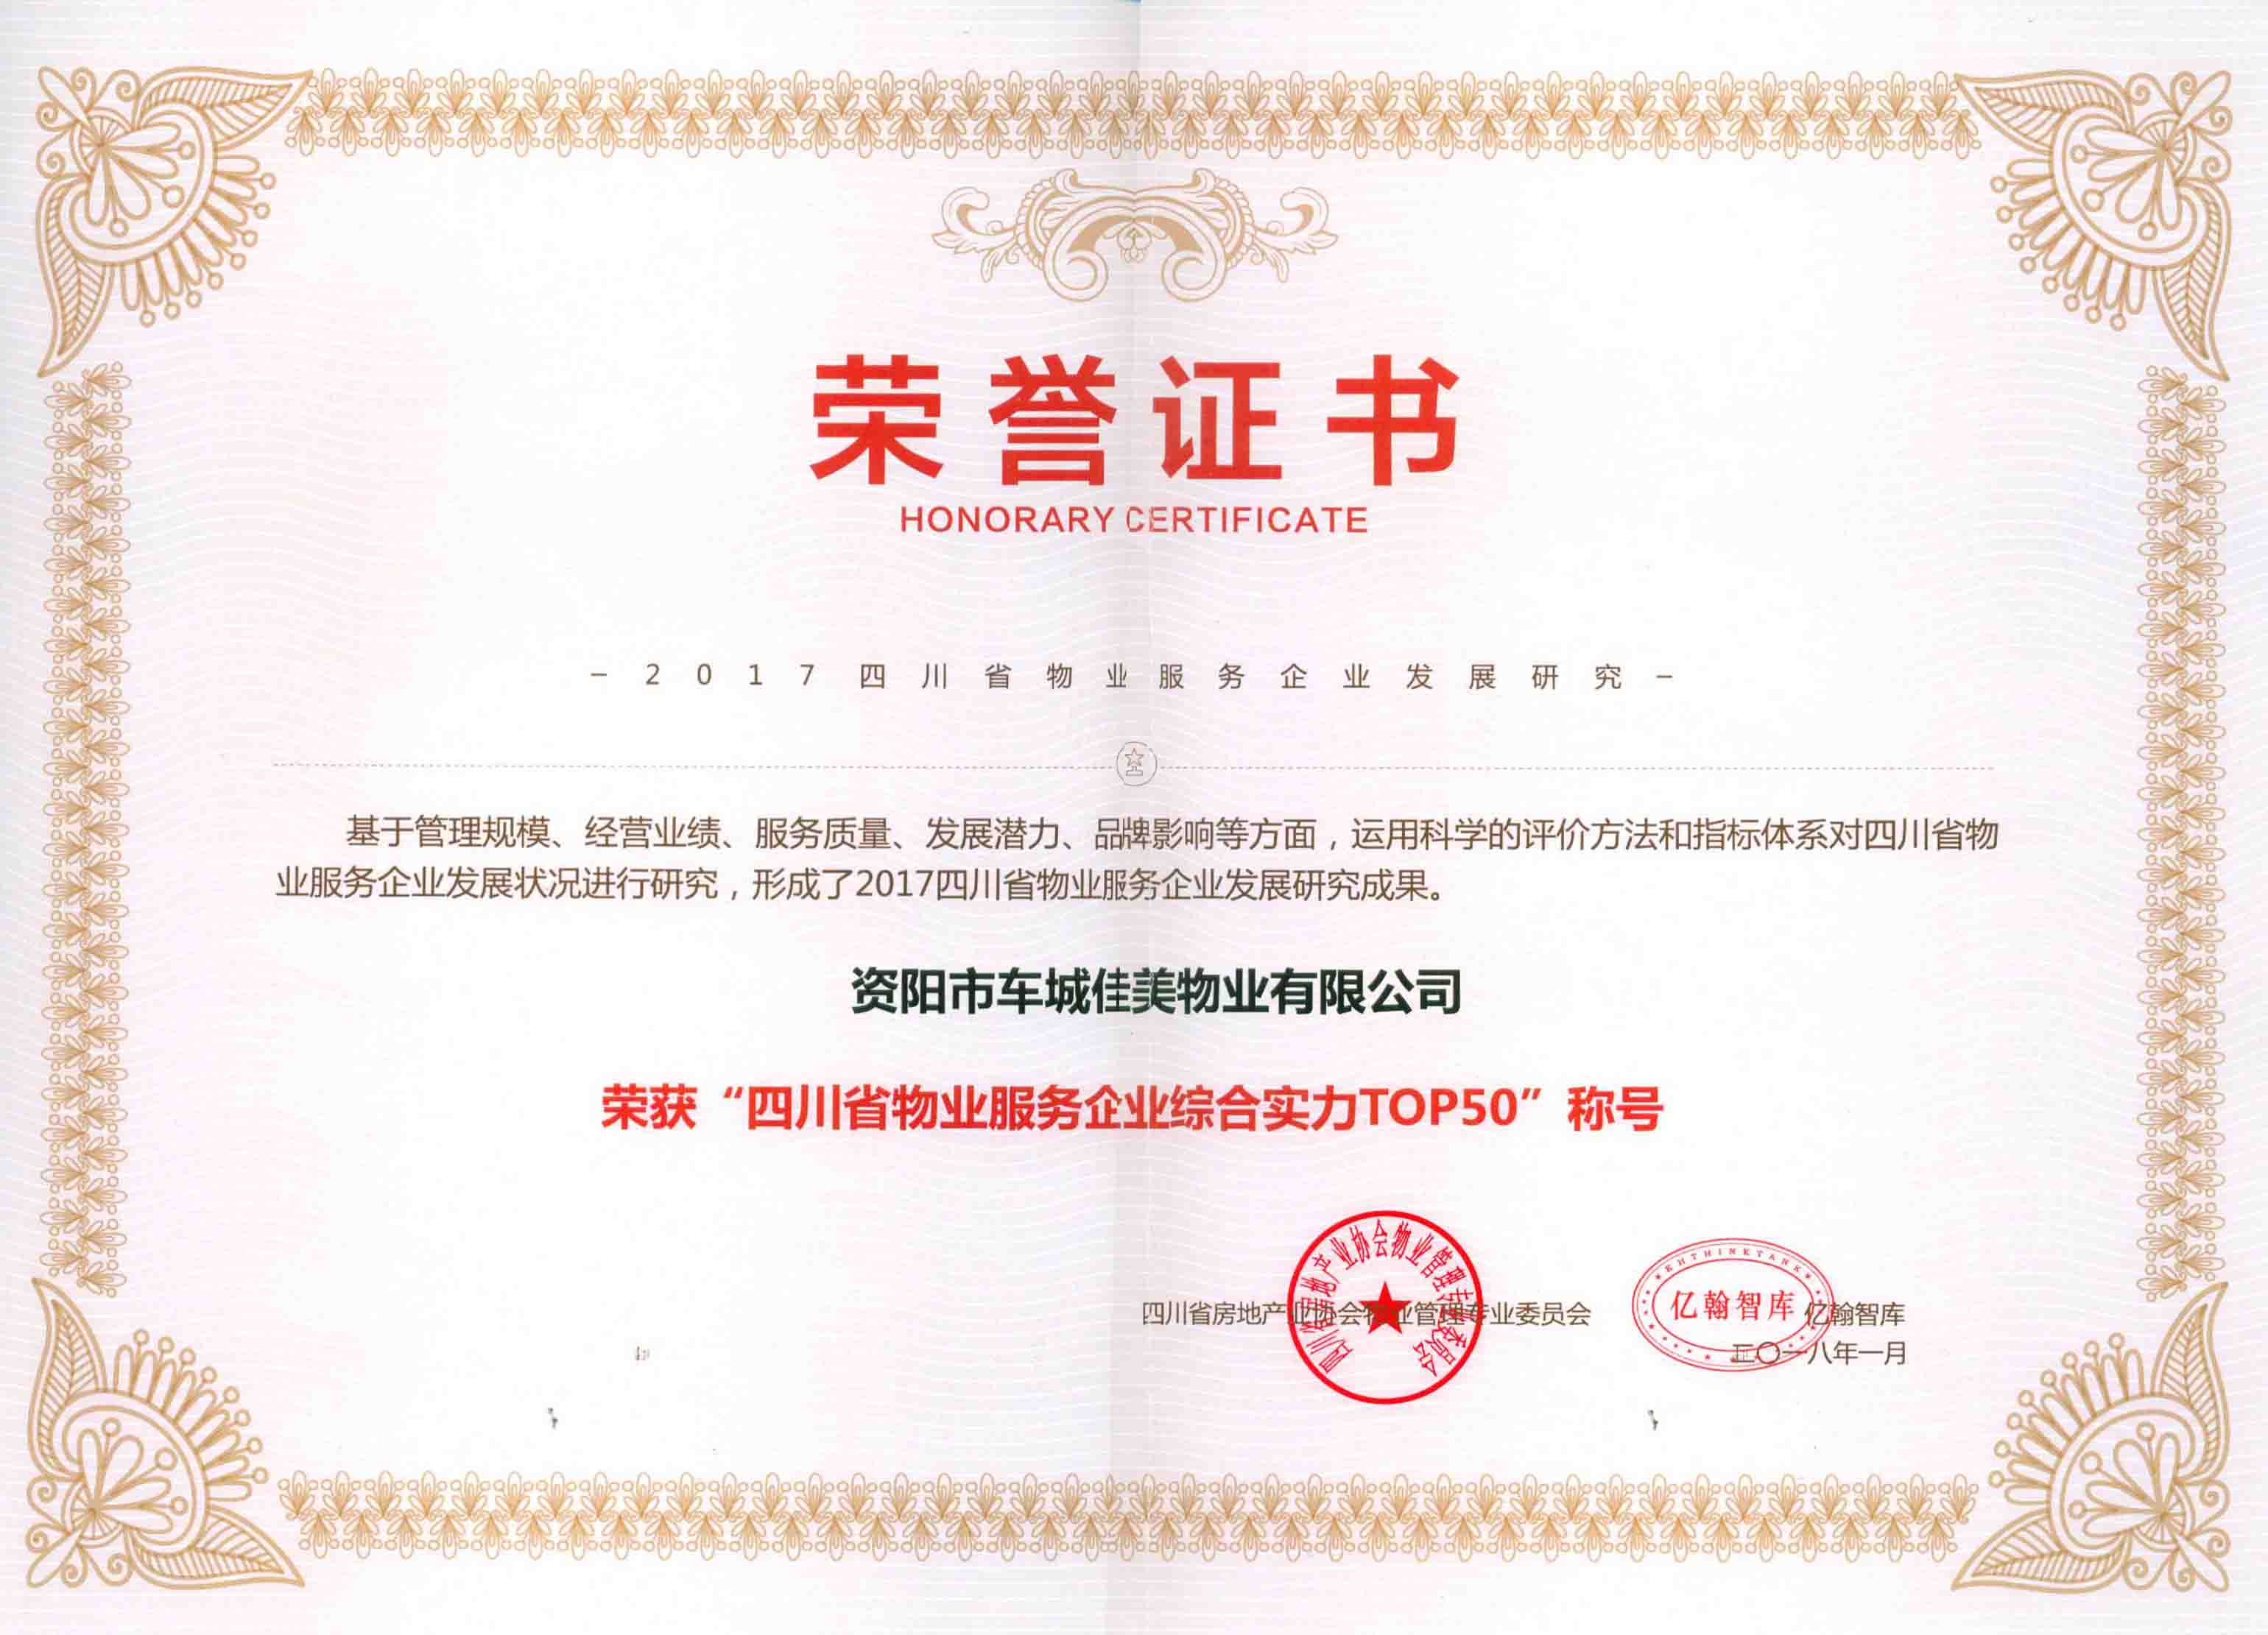 06佳美物业荣获“四川省物业服务企业综合实力TOP50”称号。1.jpg